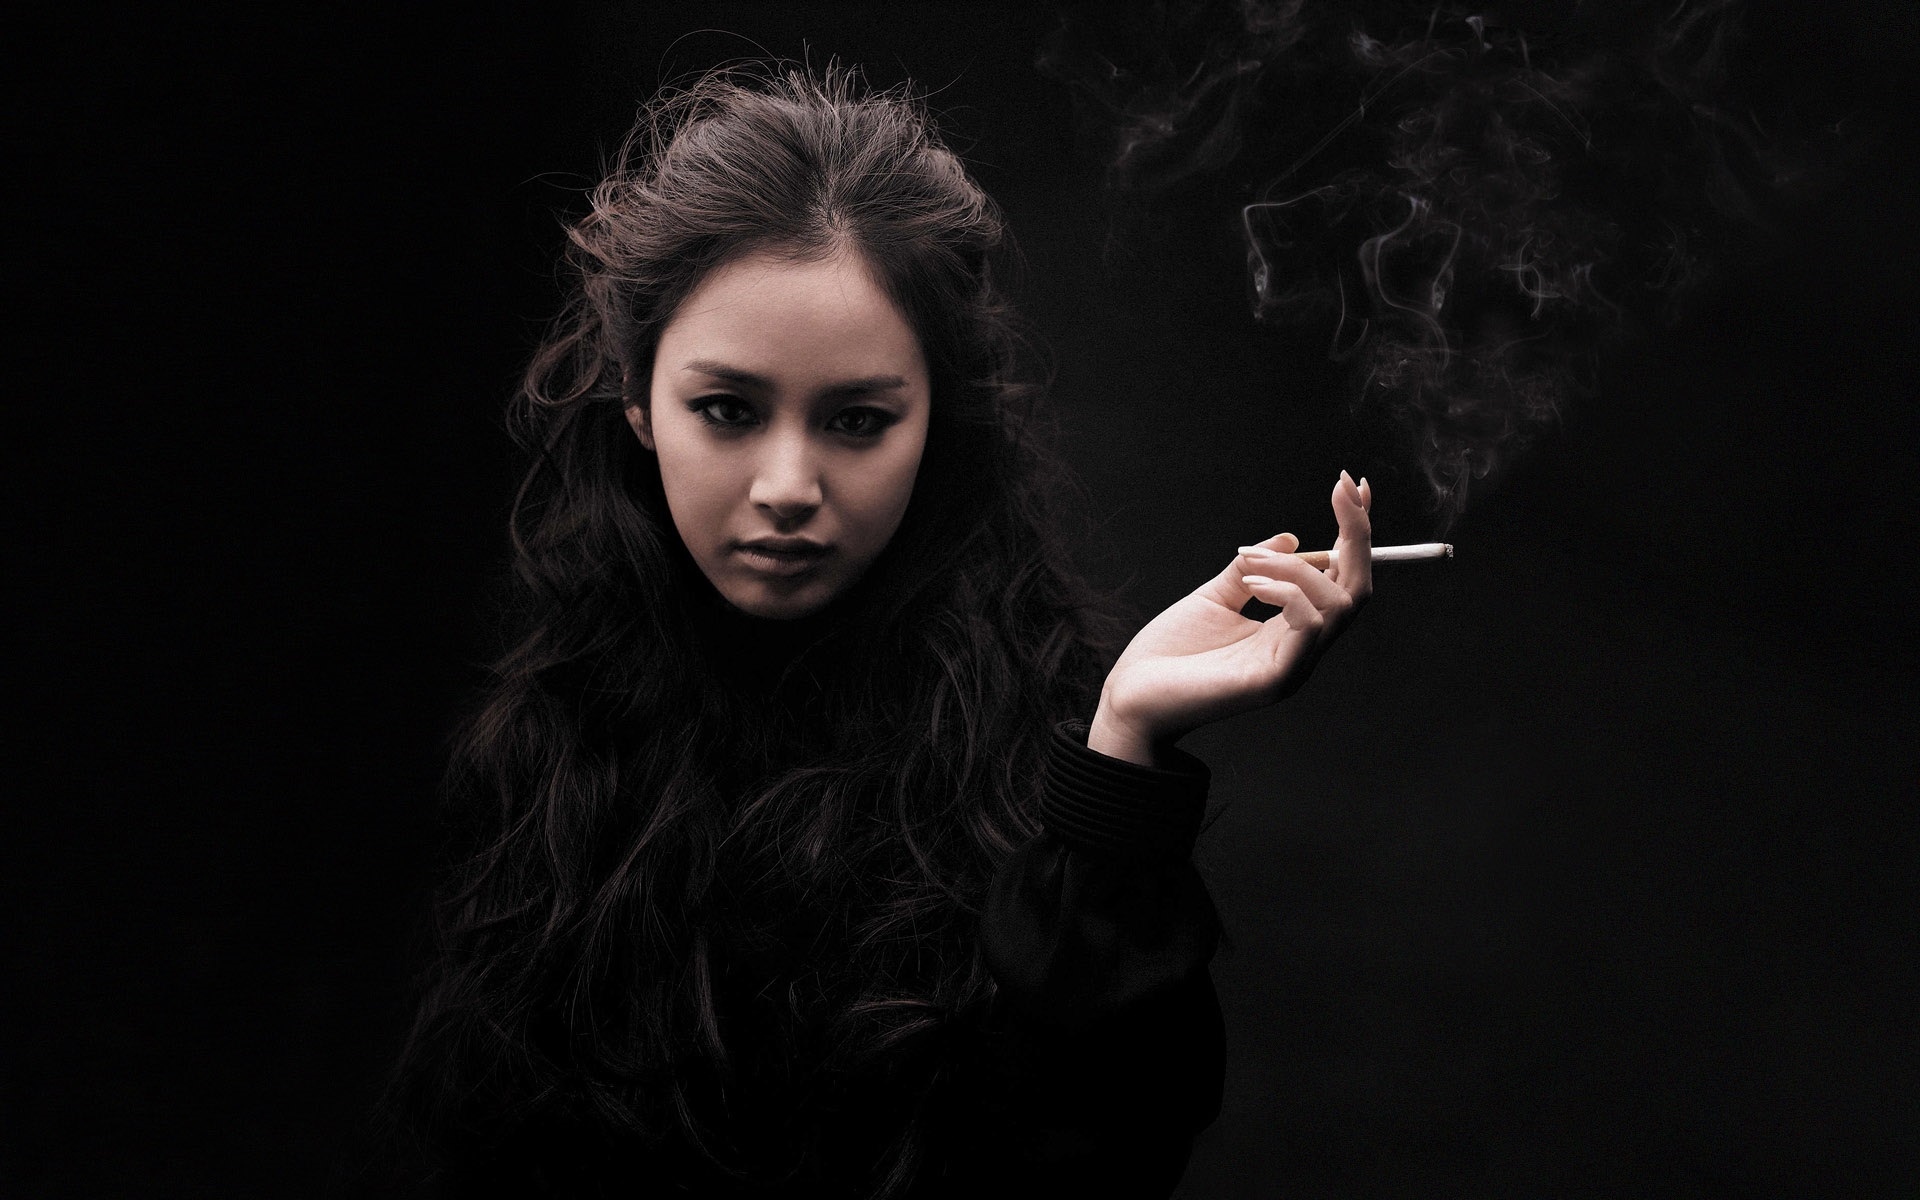 金泰熙,亚洲女孩,吸烟,黑色壁纸1440x900分辨率查看